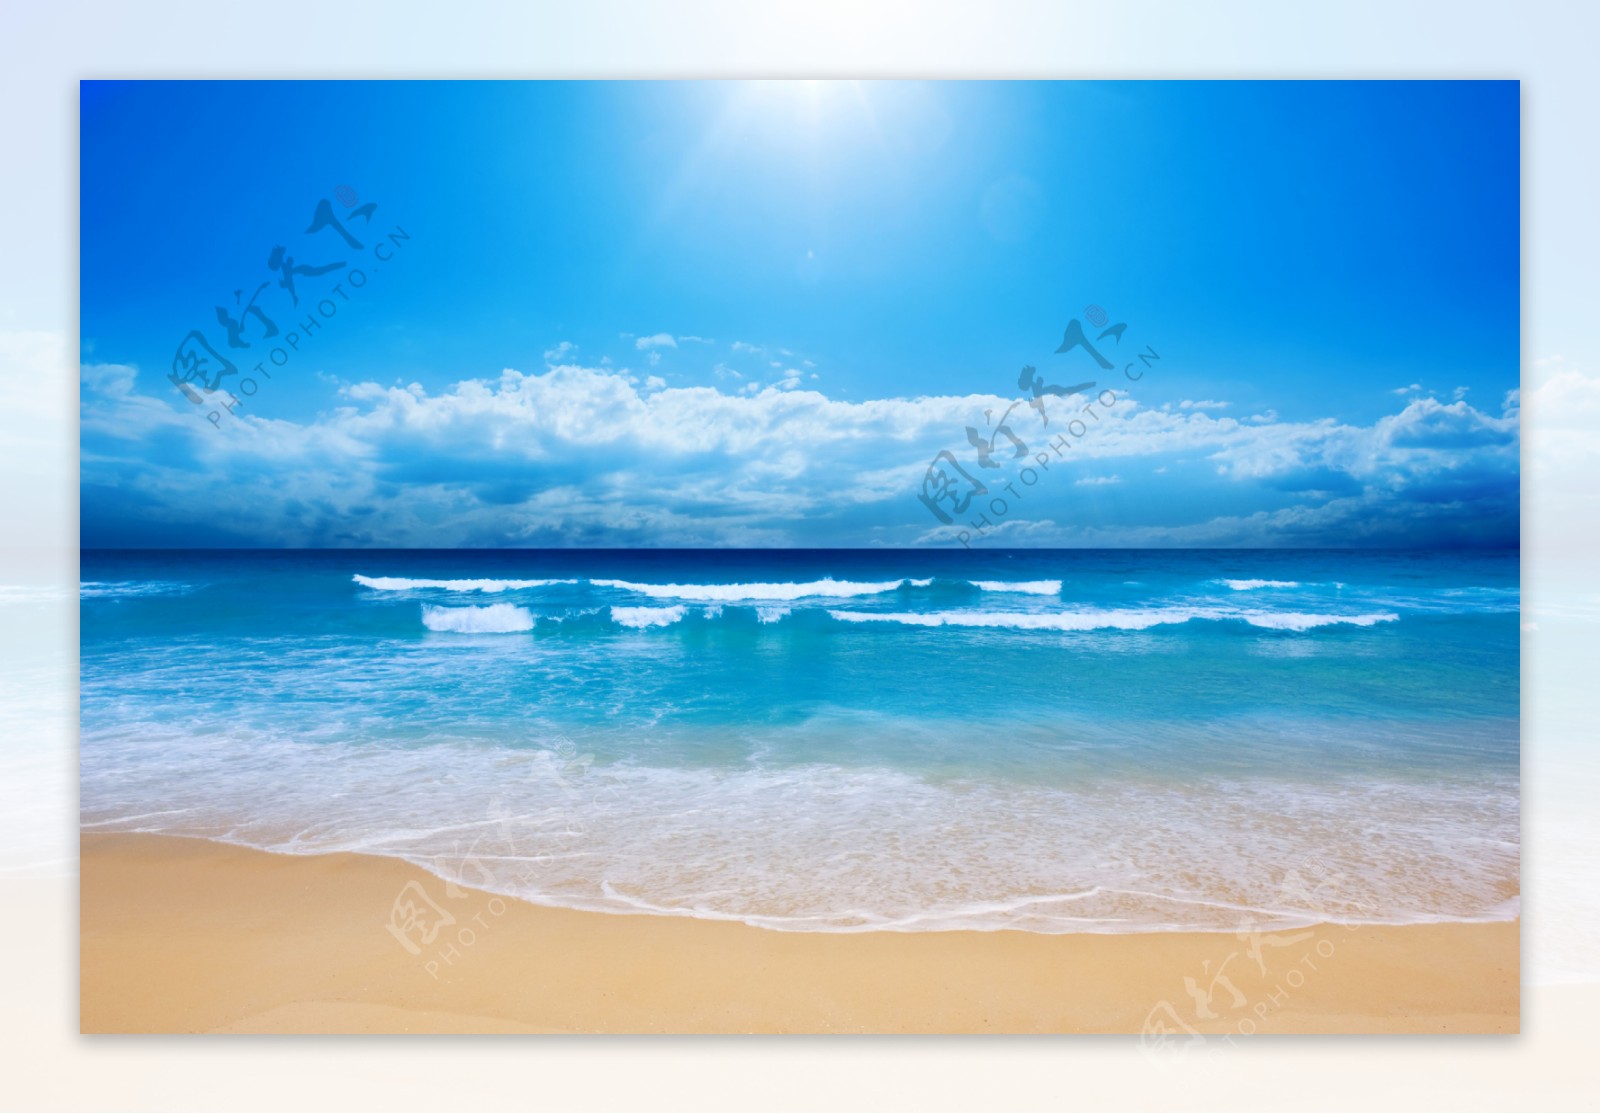 蓝天白云大海与银色的沙滩50375_大海与海边_风景风光类_图库壁纸_68Design